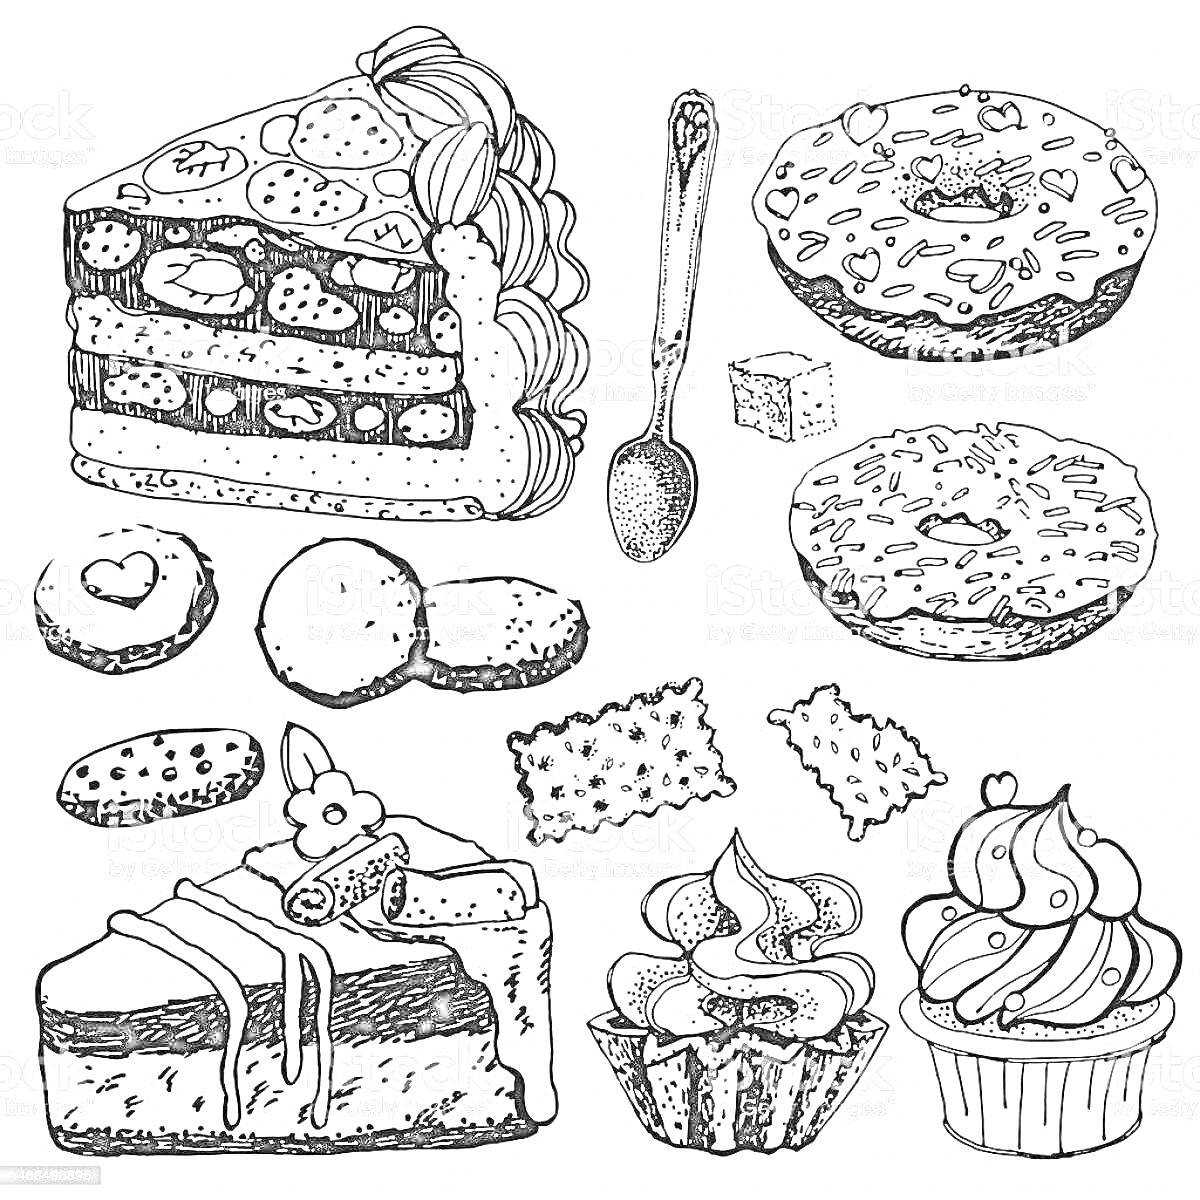 Раскраска Разнообразие кондитерских изделий (кусок слоеного пирога с ягодами и кремом, посыпанный кондитерской присыпкой пончик с сердечками, пончик с полосками глазури, мармелад, печенье, кусок торта с кремом, украшенный пирожок с начинкой, маффин с кремом).